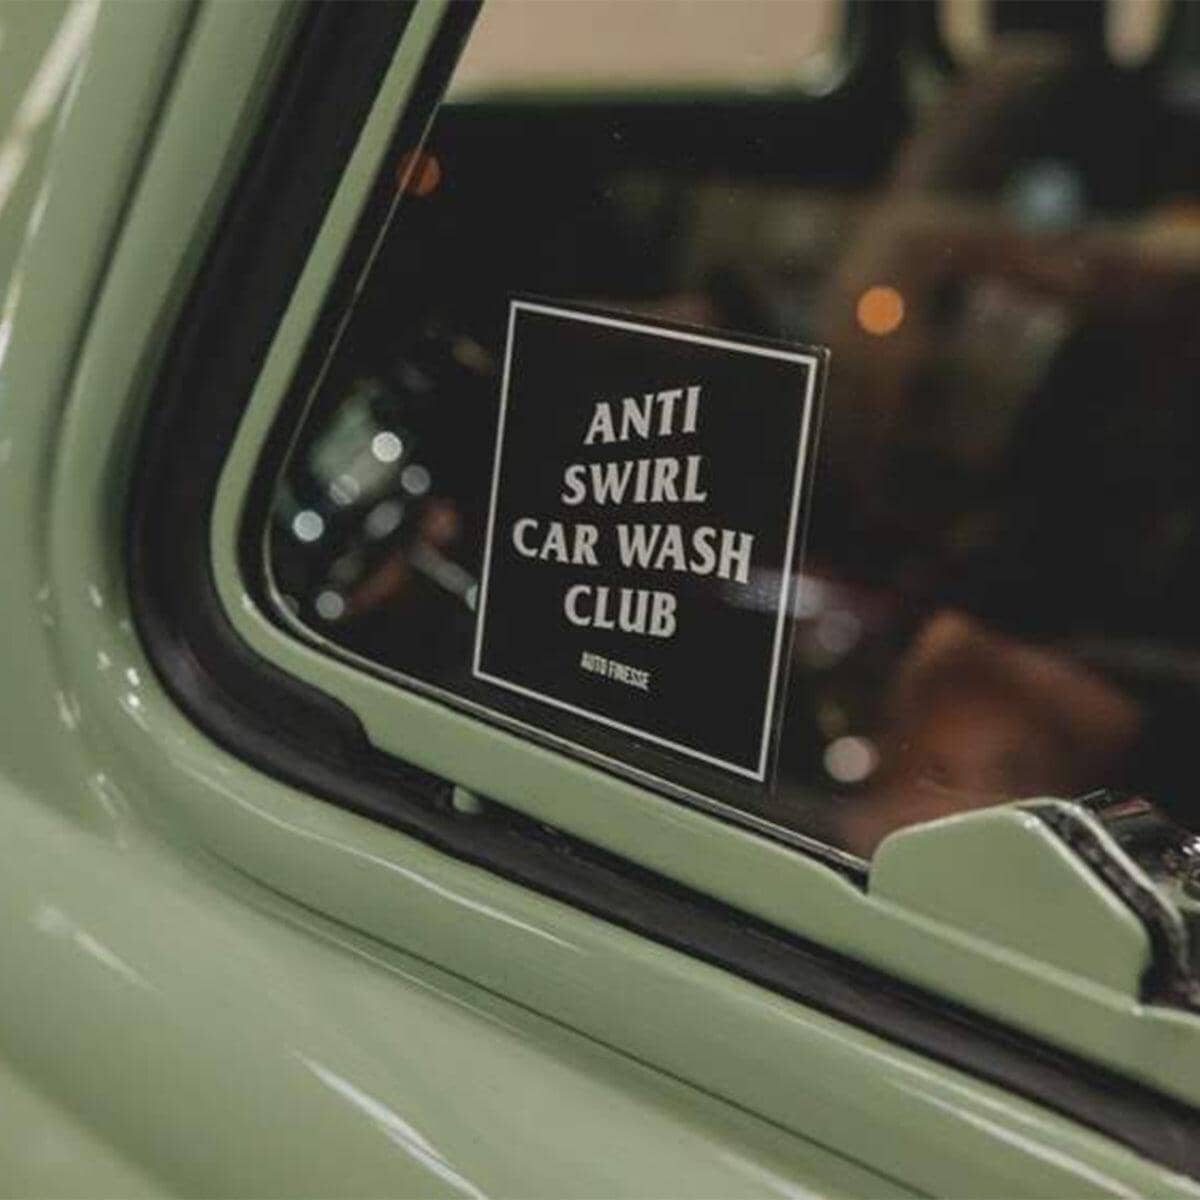 Anti Swirl Car Wash Club